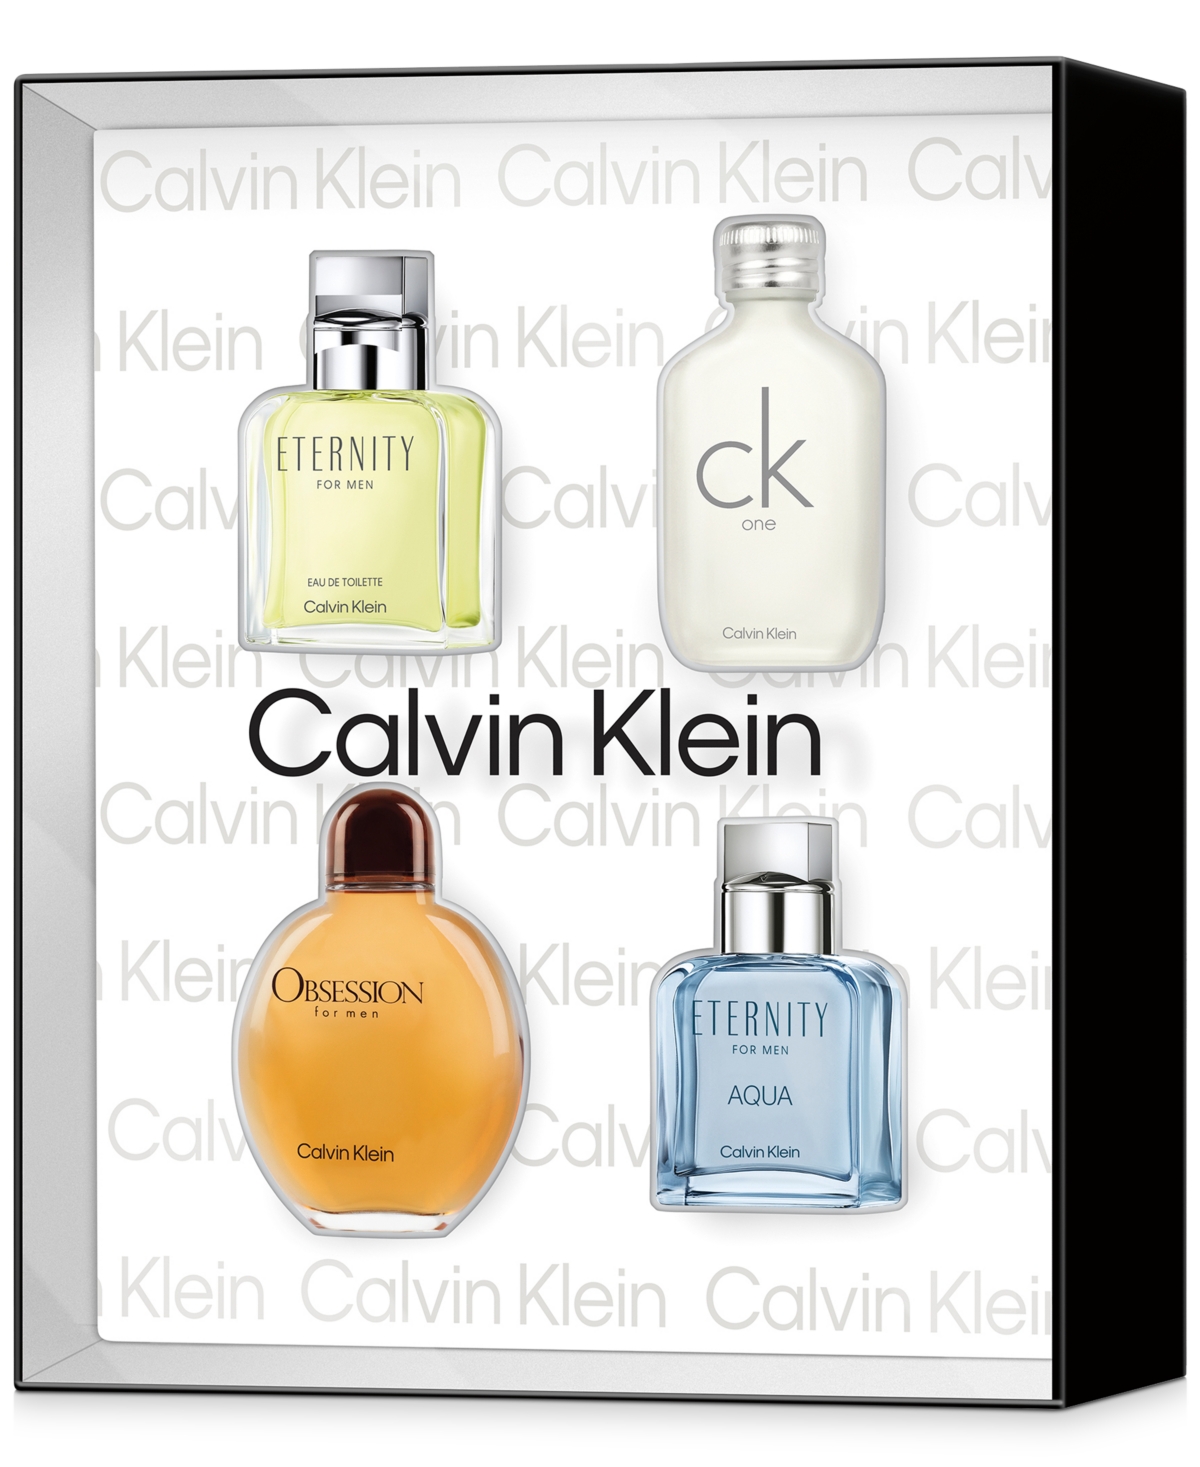 Calvin Klein ck one Eau De Toilette 4-Pc Gift Set ($141 Value)